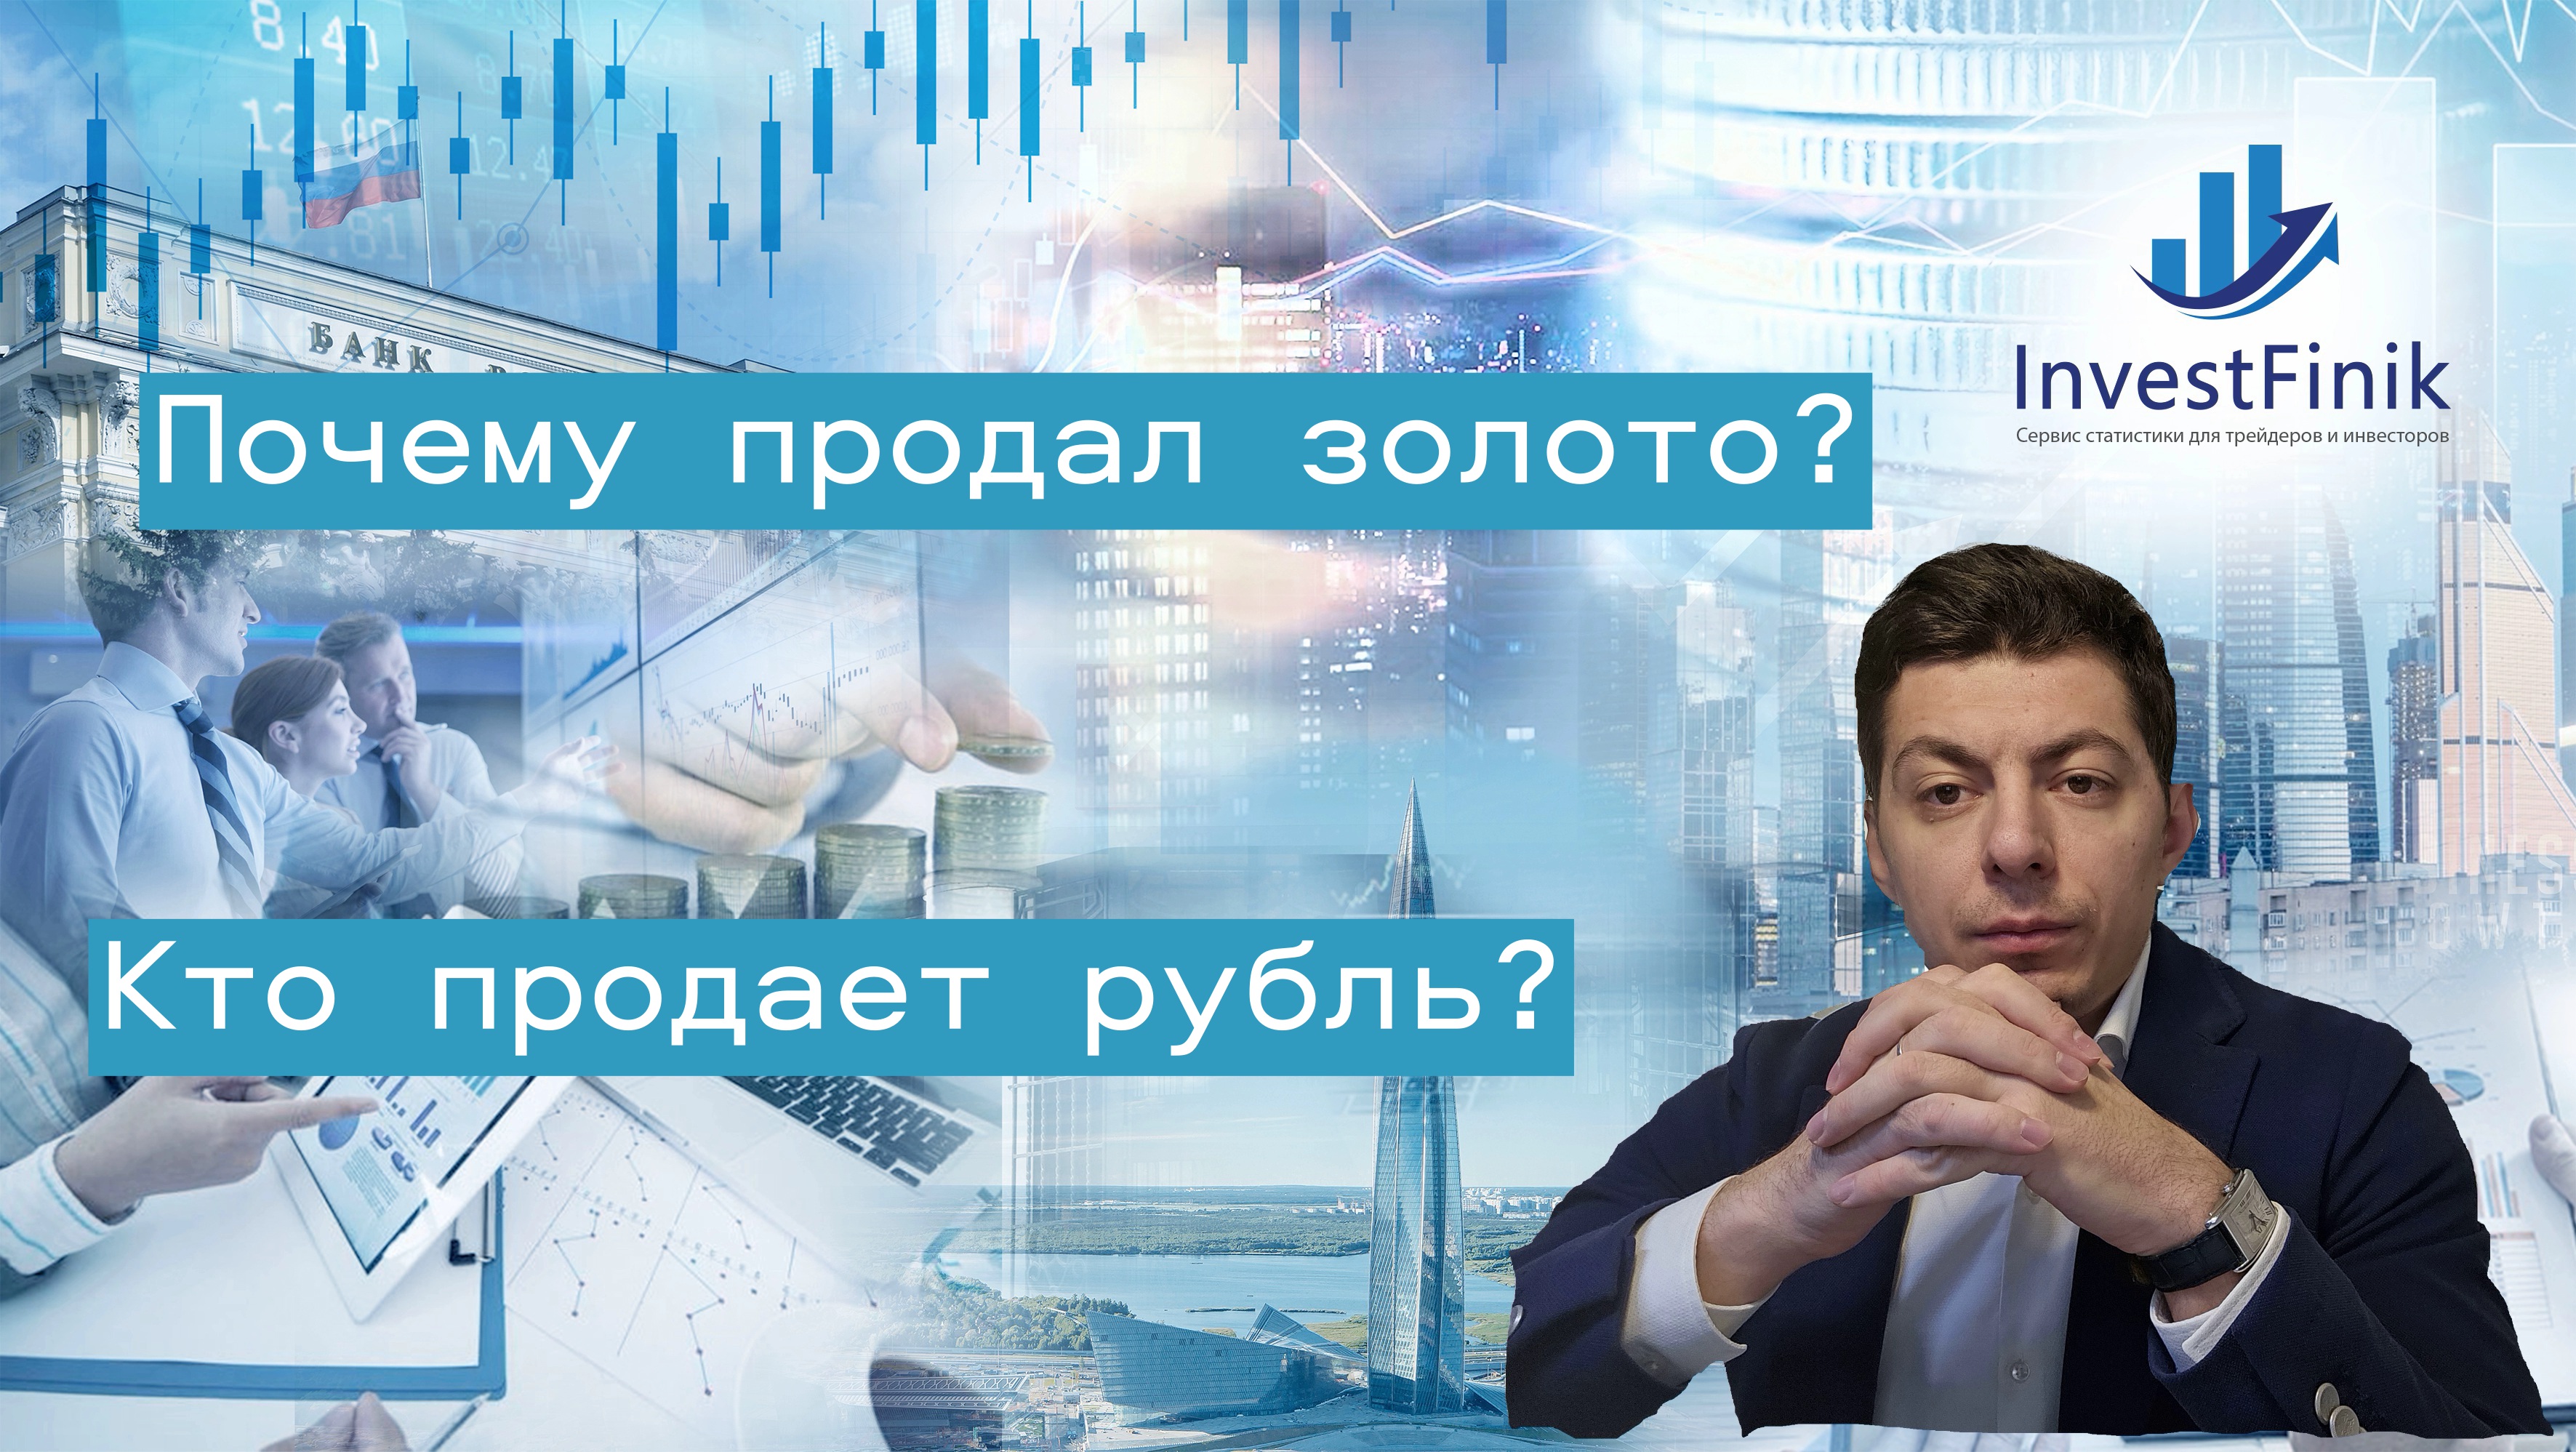 Кто продает рубль и как ЦБ стабилизирует рынок? Почему сейчас время обратить внимание на ОФЗ?